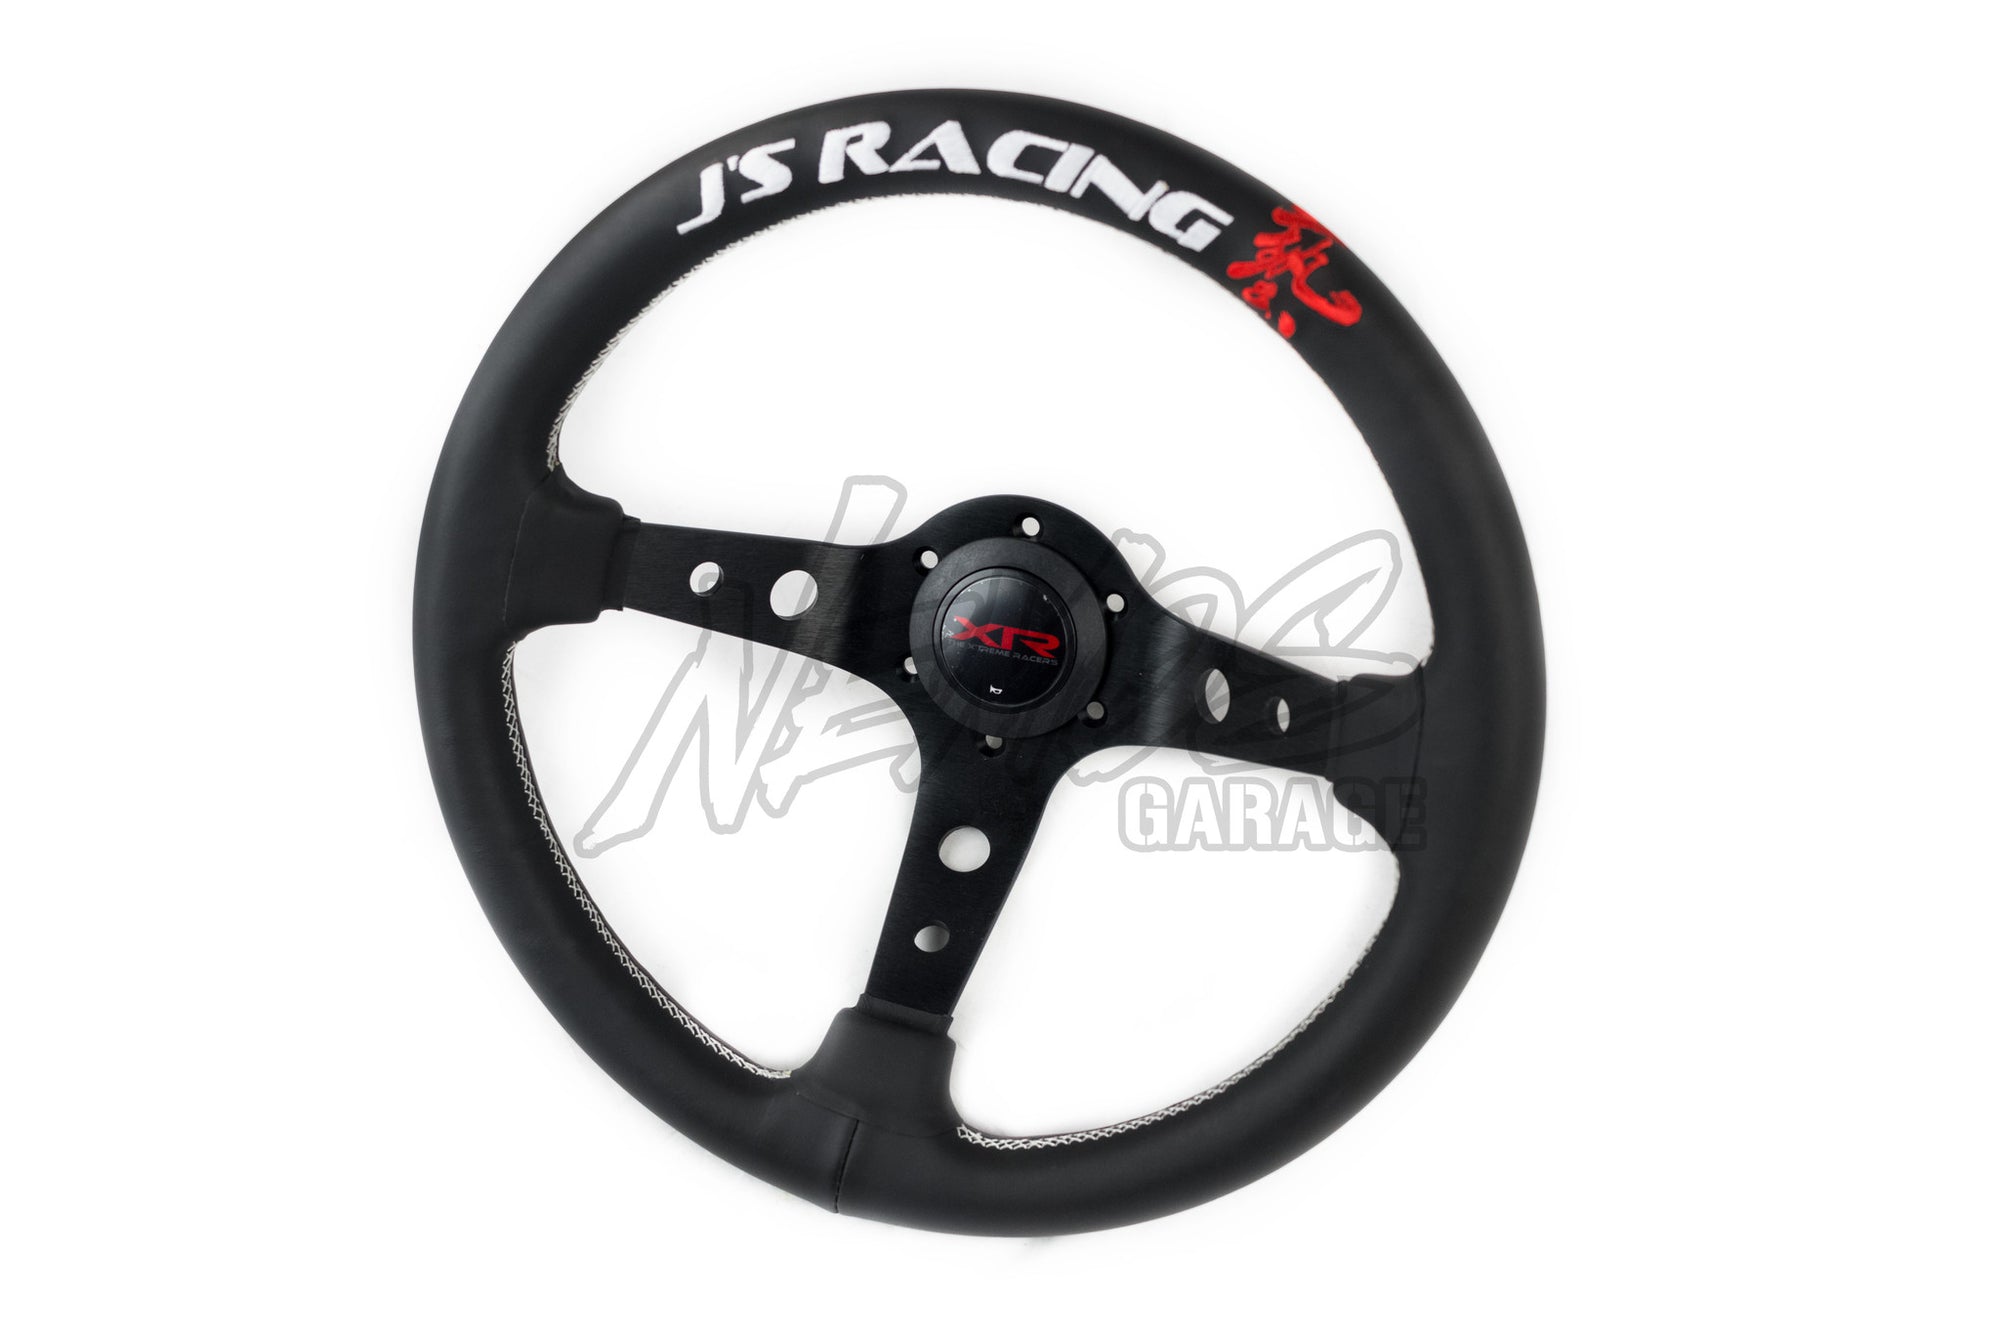 J's Racing "Xtreme Racers" Type-D Steering Wheel - U.S. Version